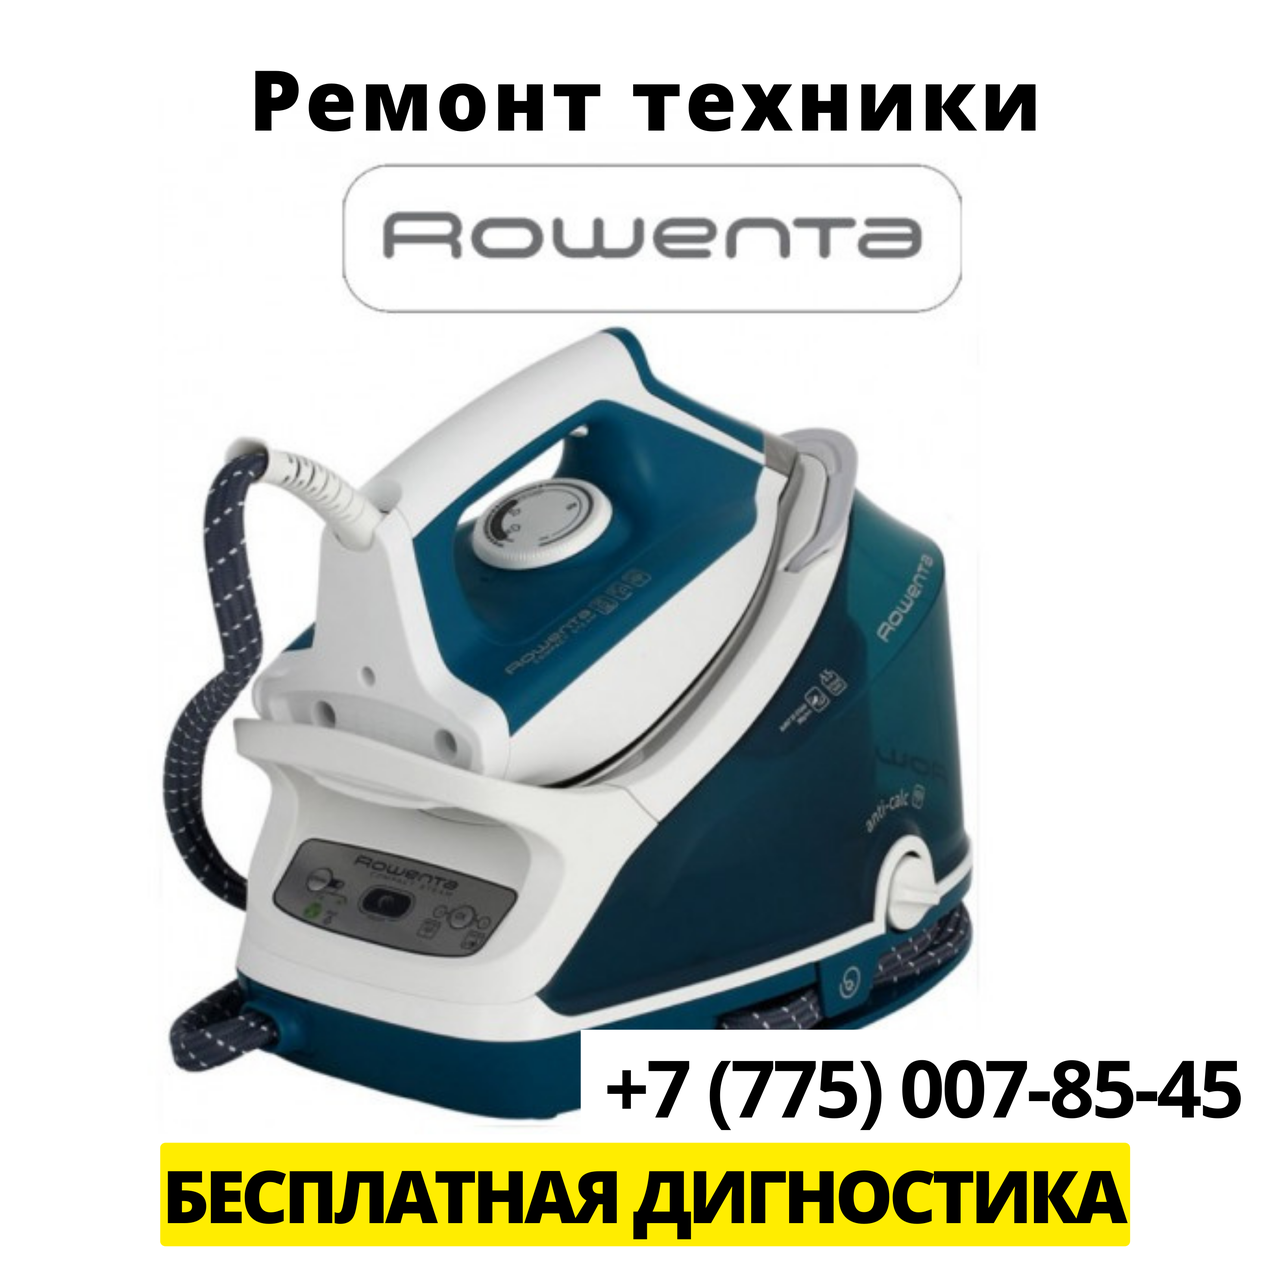 Ремонт бытовой техники Rowenta в Алматы